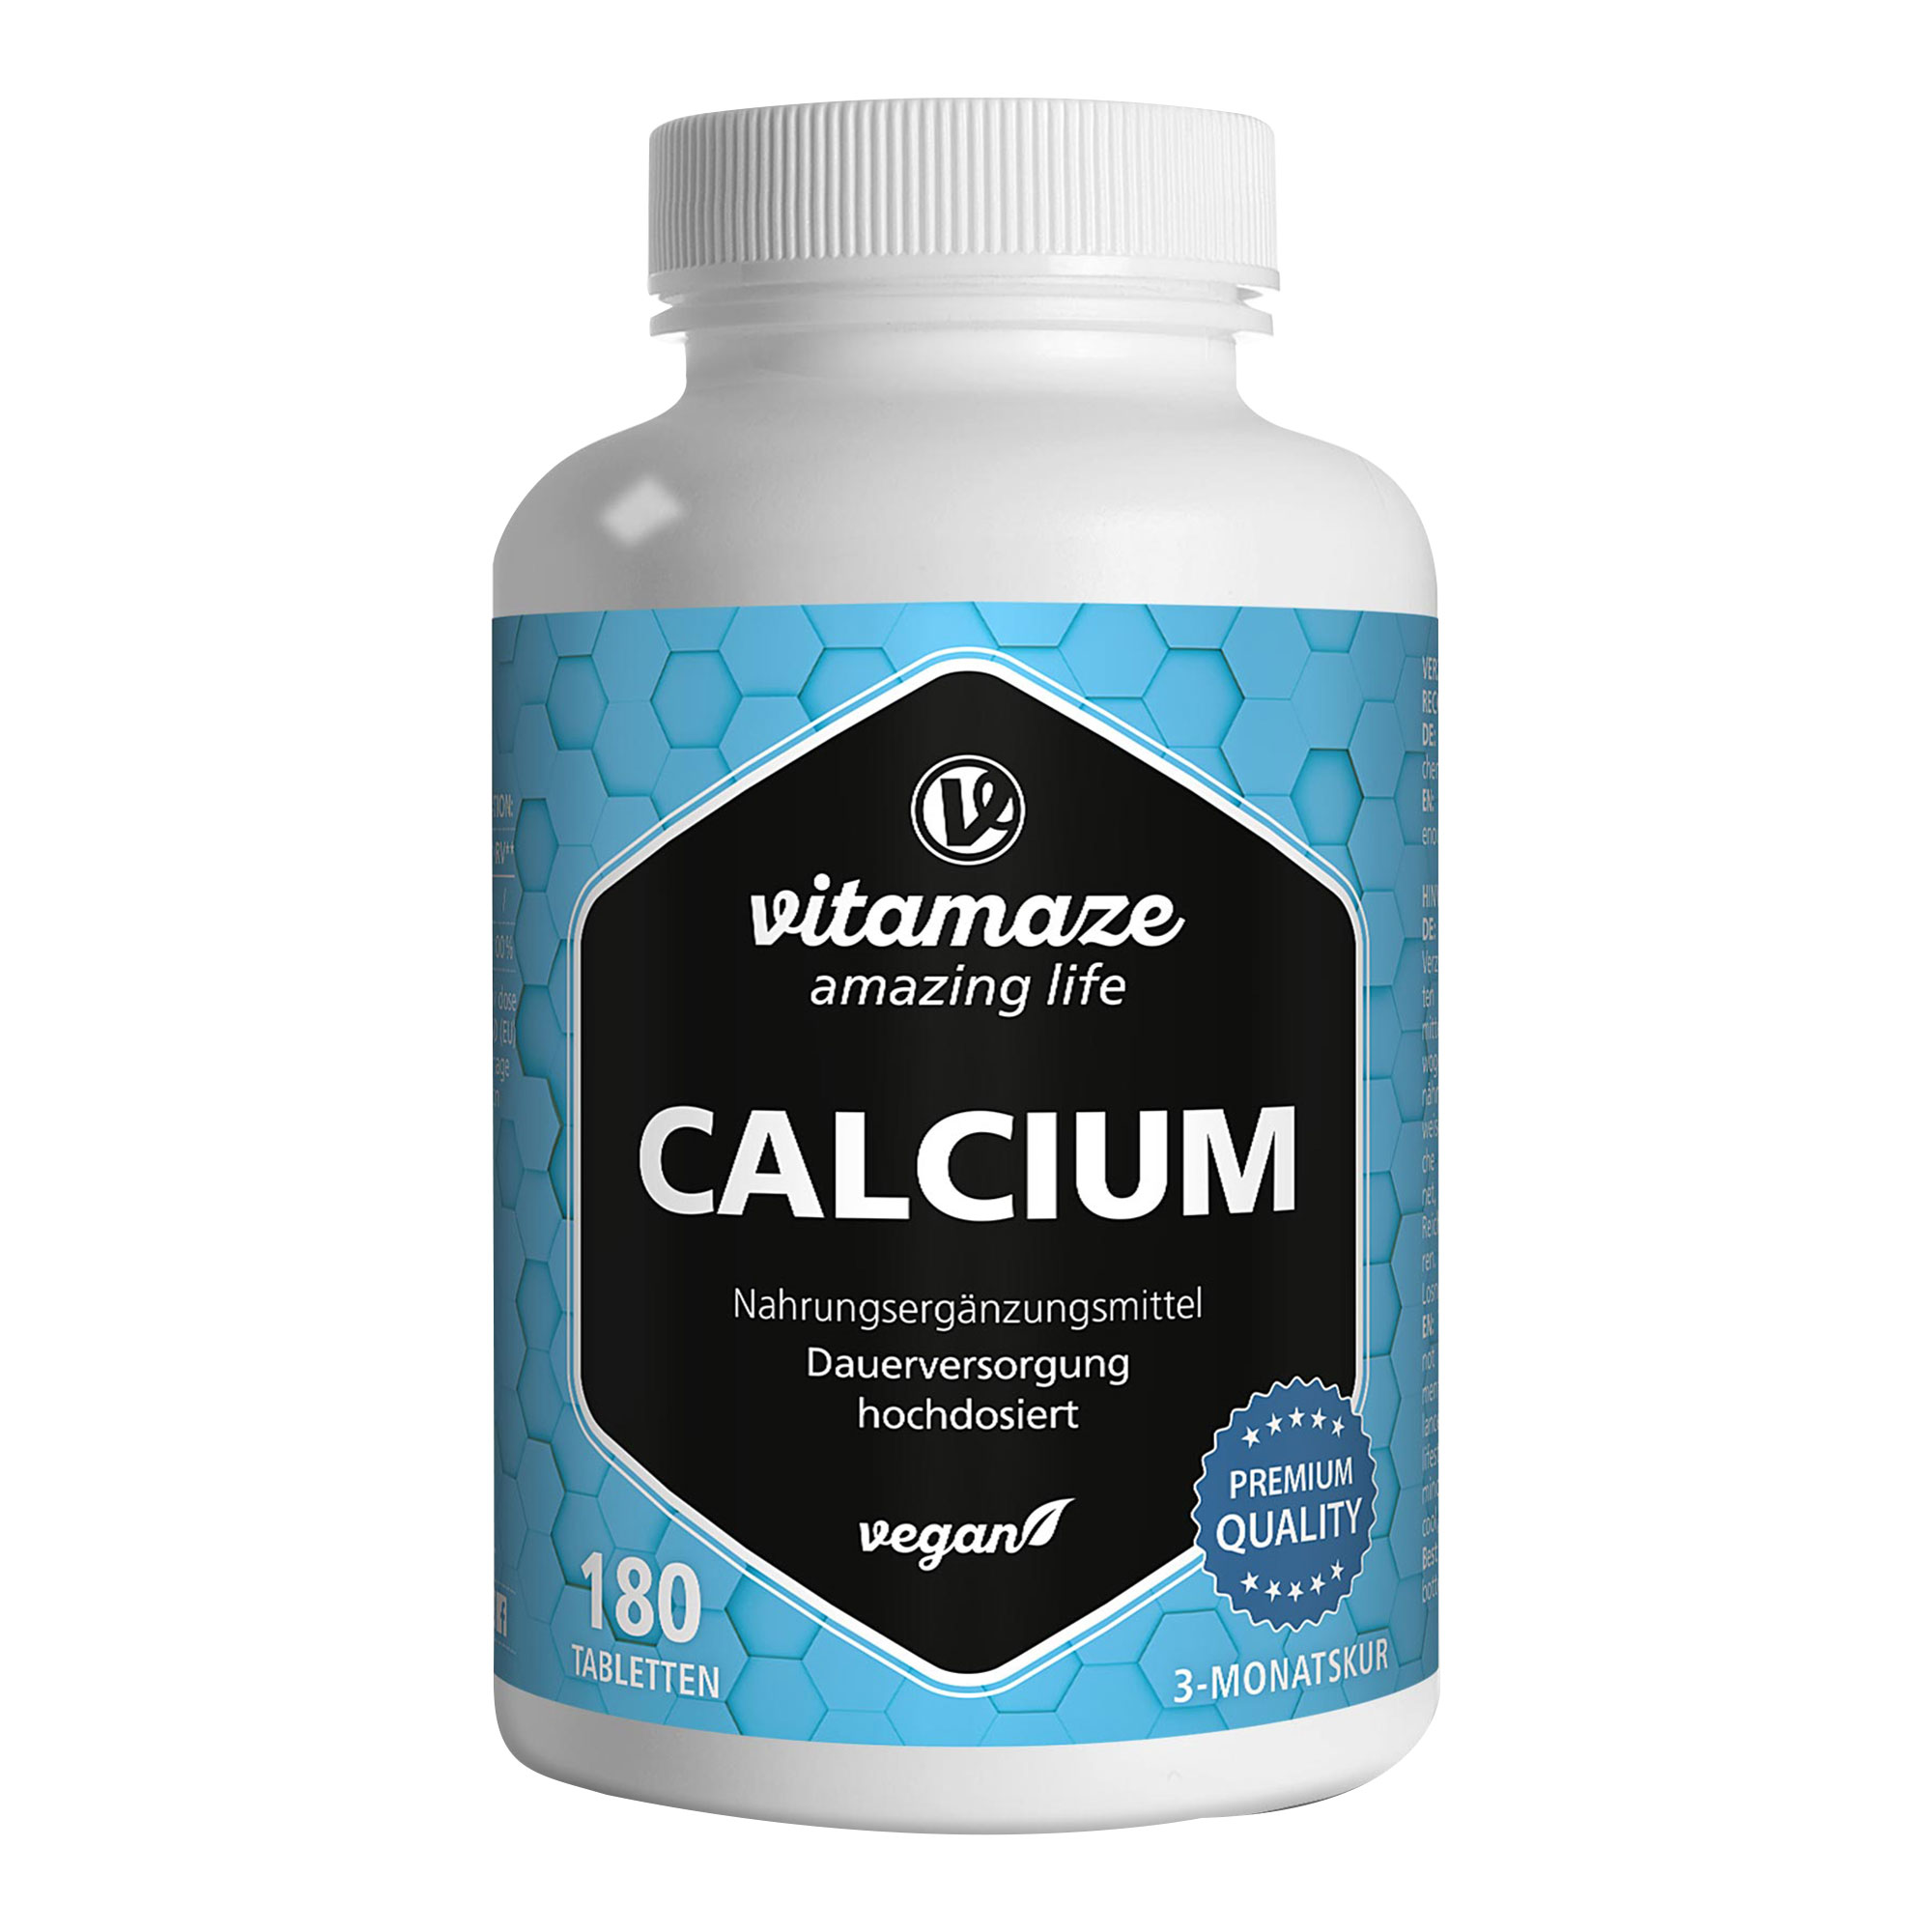 Nahrungsergänzungsmittel mit Calcium.